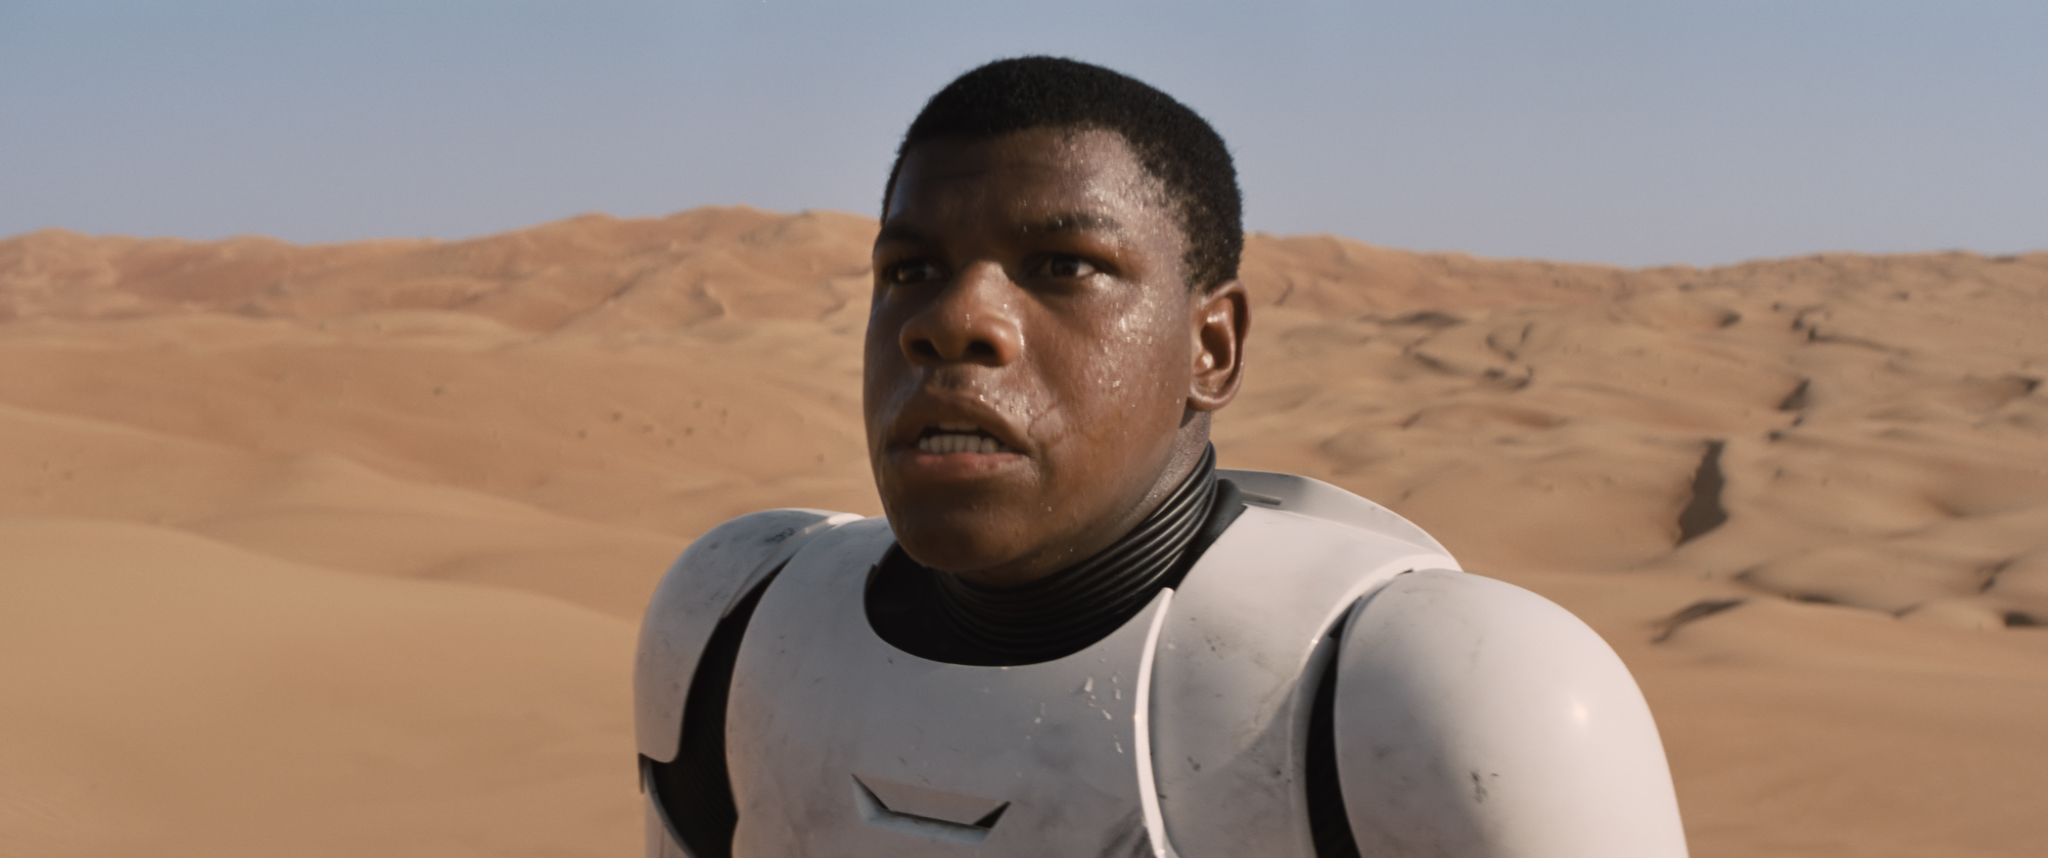 John Boyega in <i>Star Wars: The Force Awakens</i>. (Lucasfilm Ltd.)